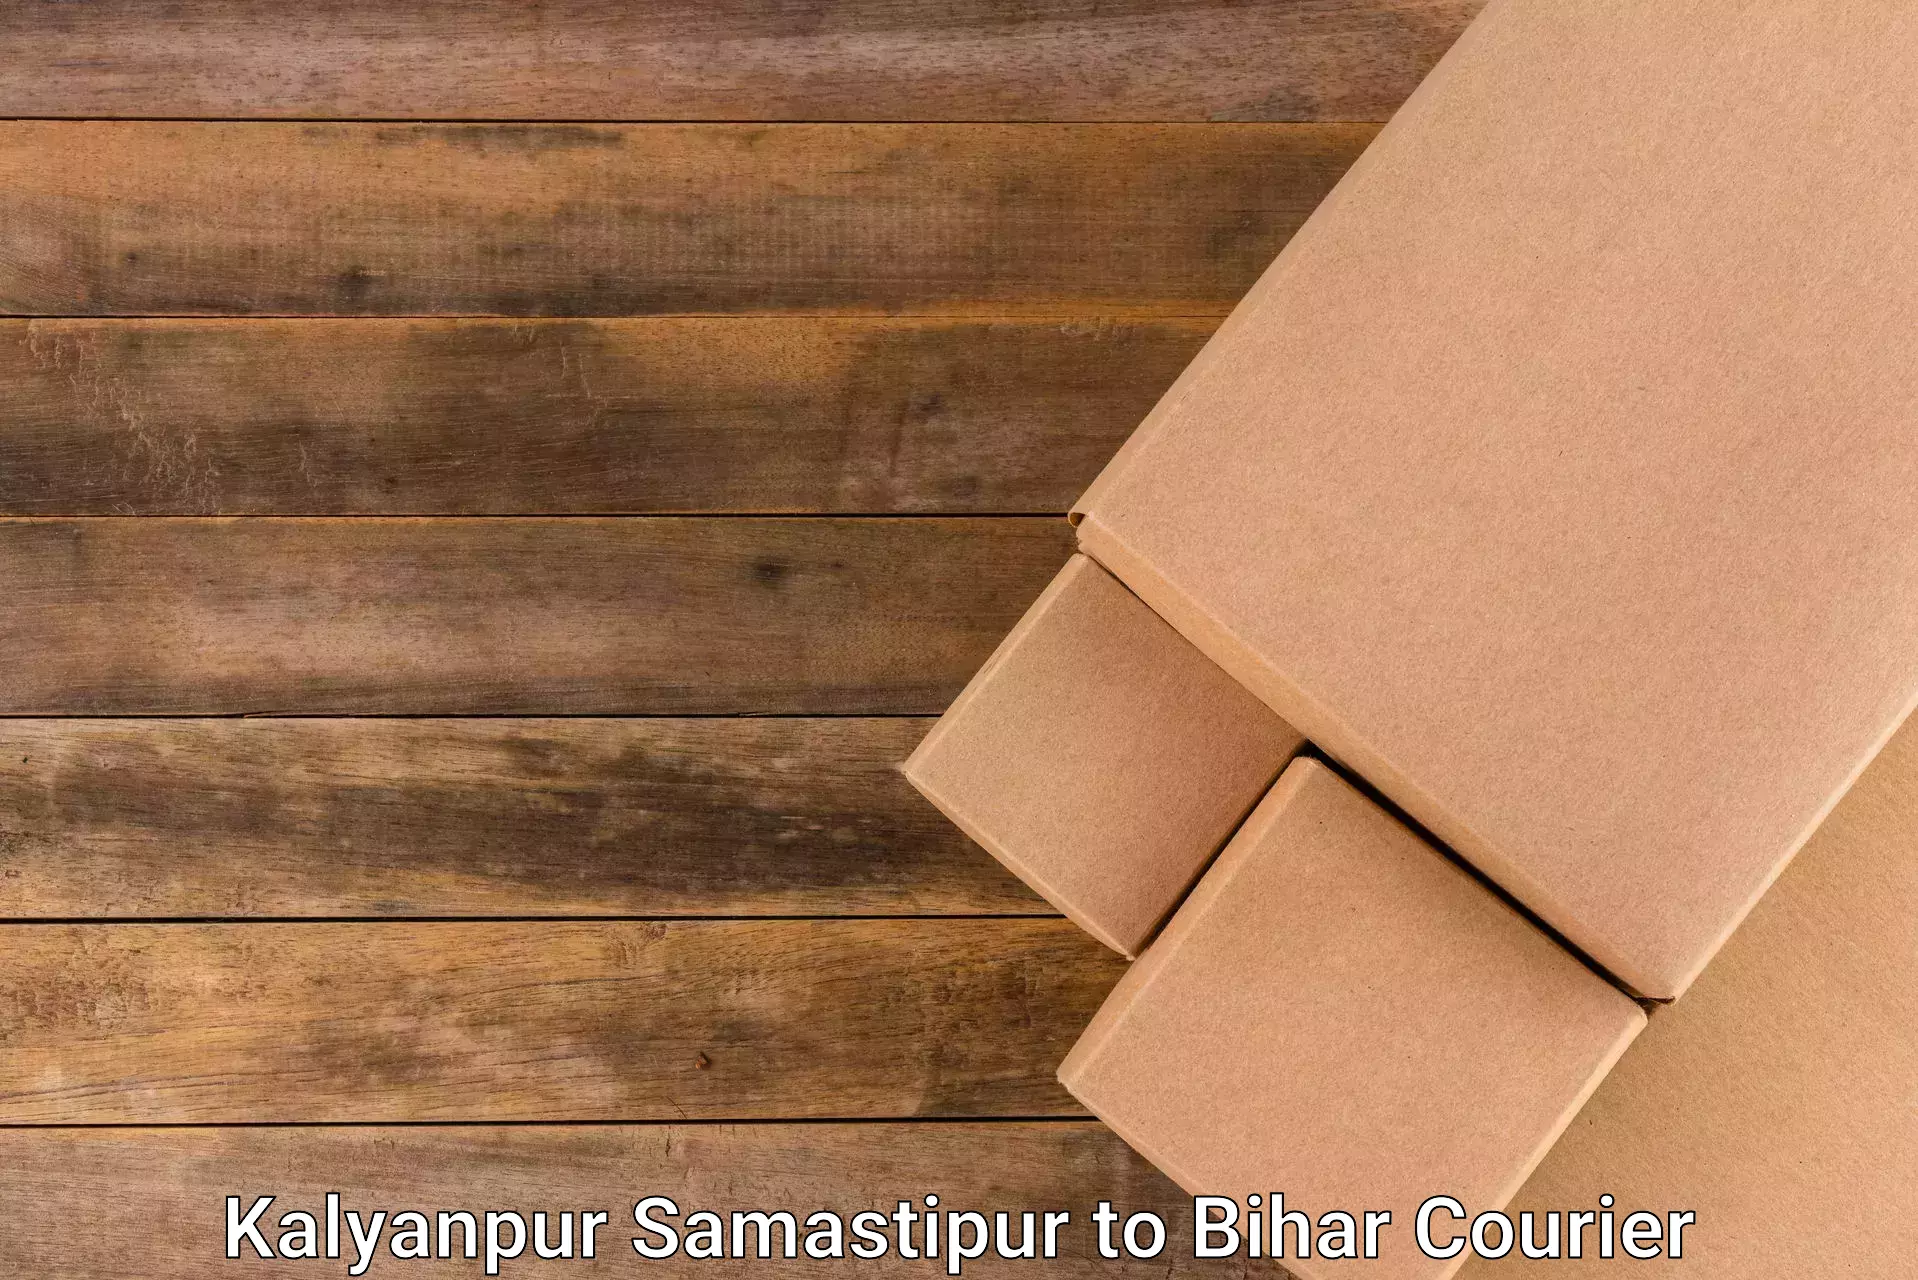 Optimized delivery routes Kalyanpur Samastipur to Goh Aurangabad